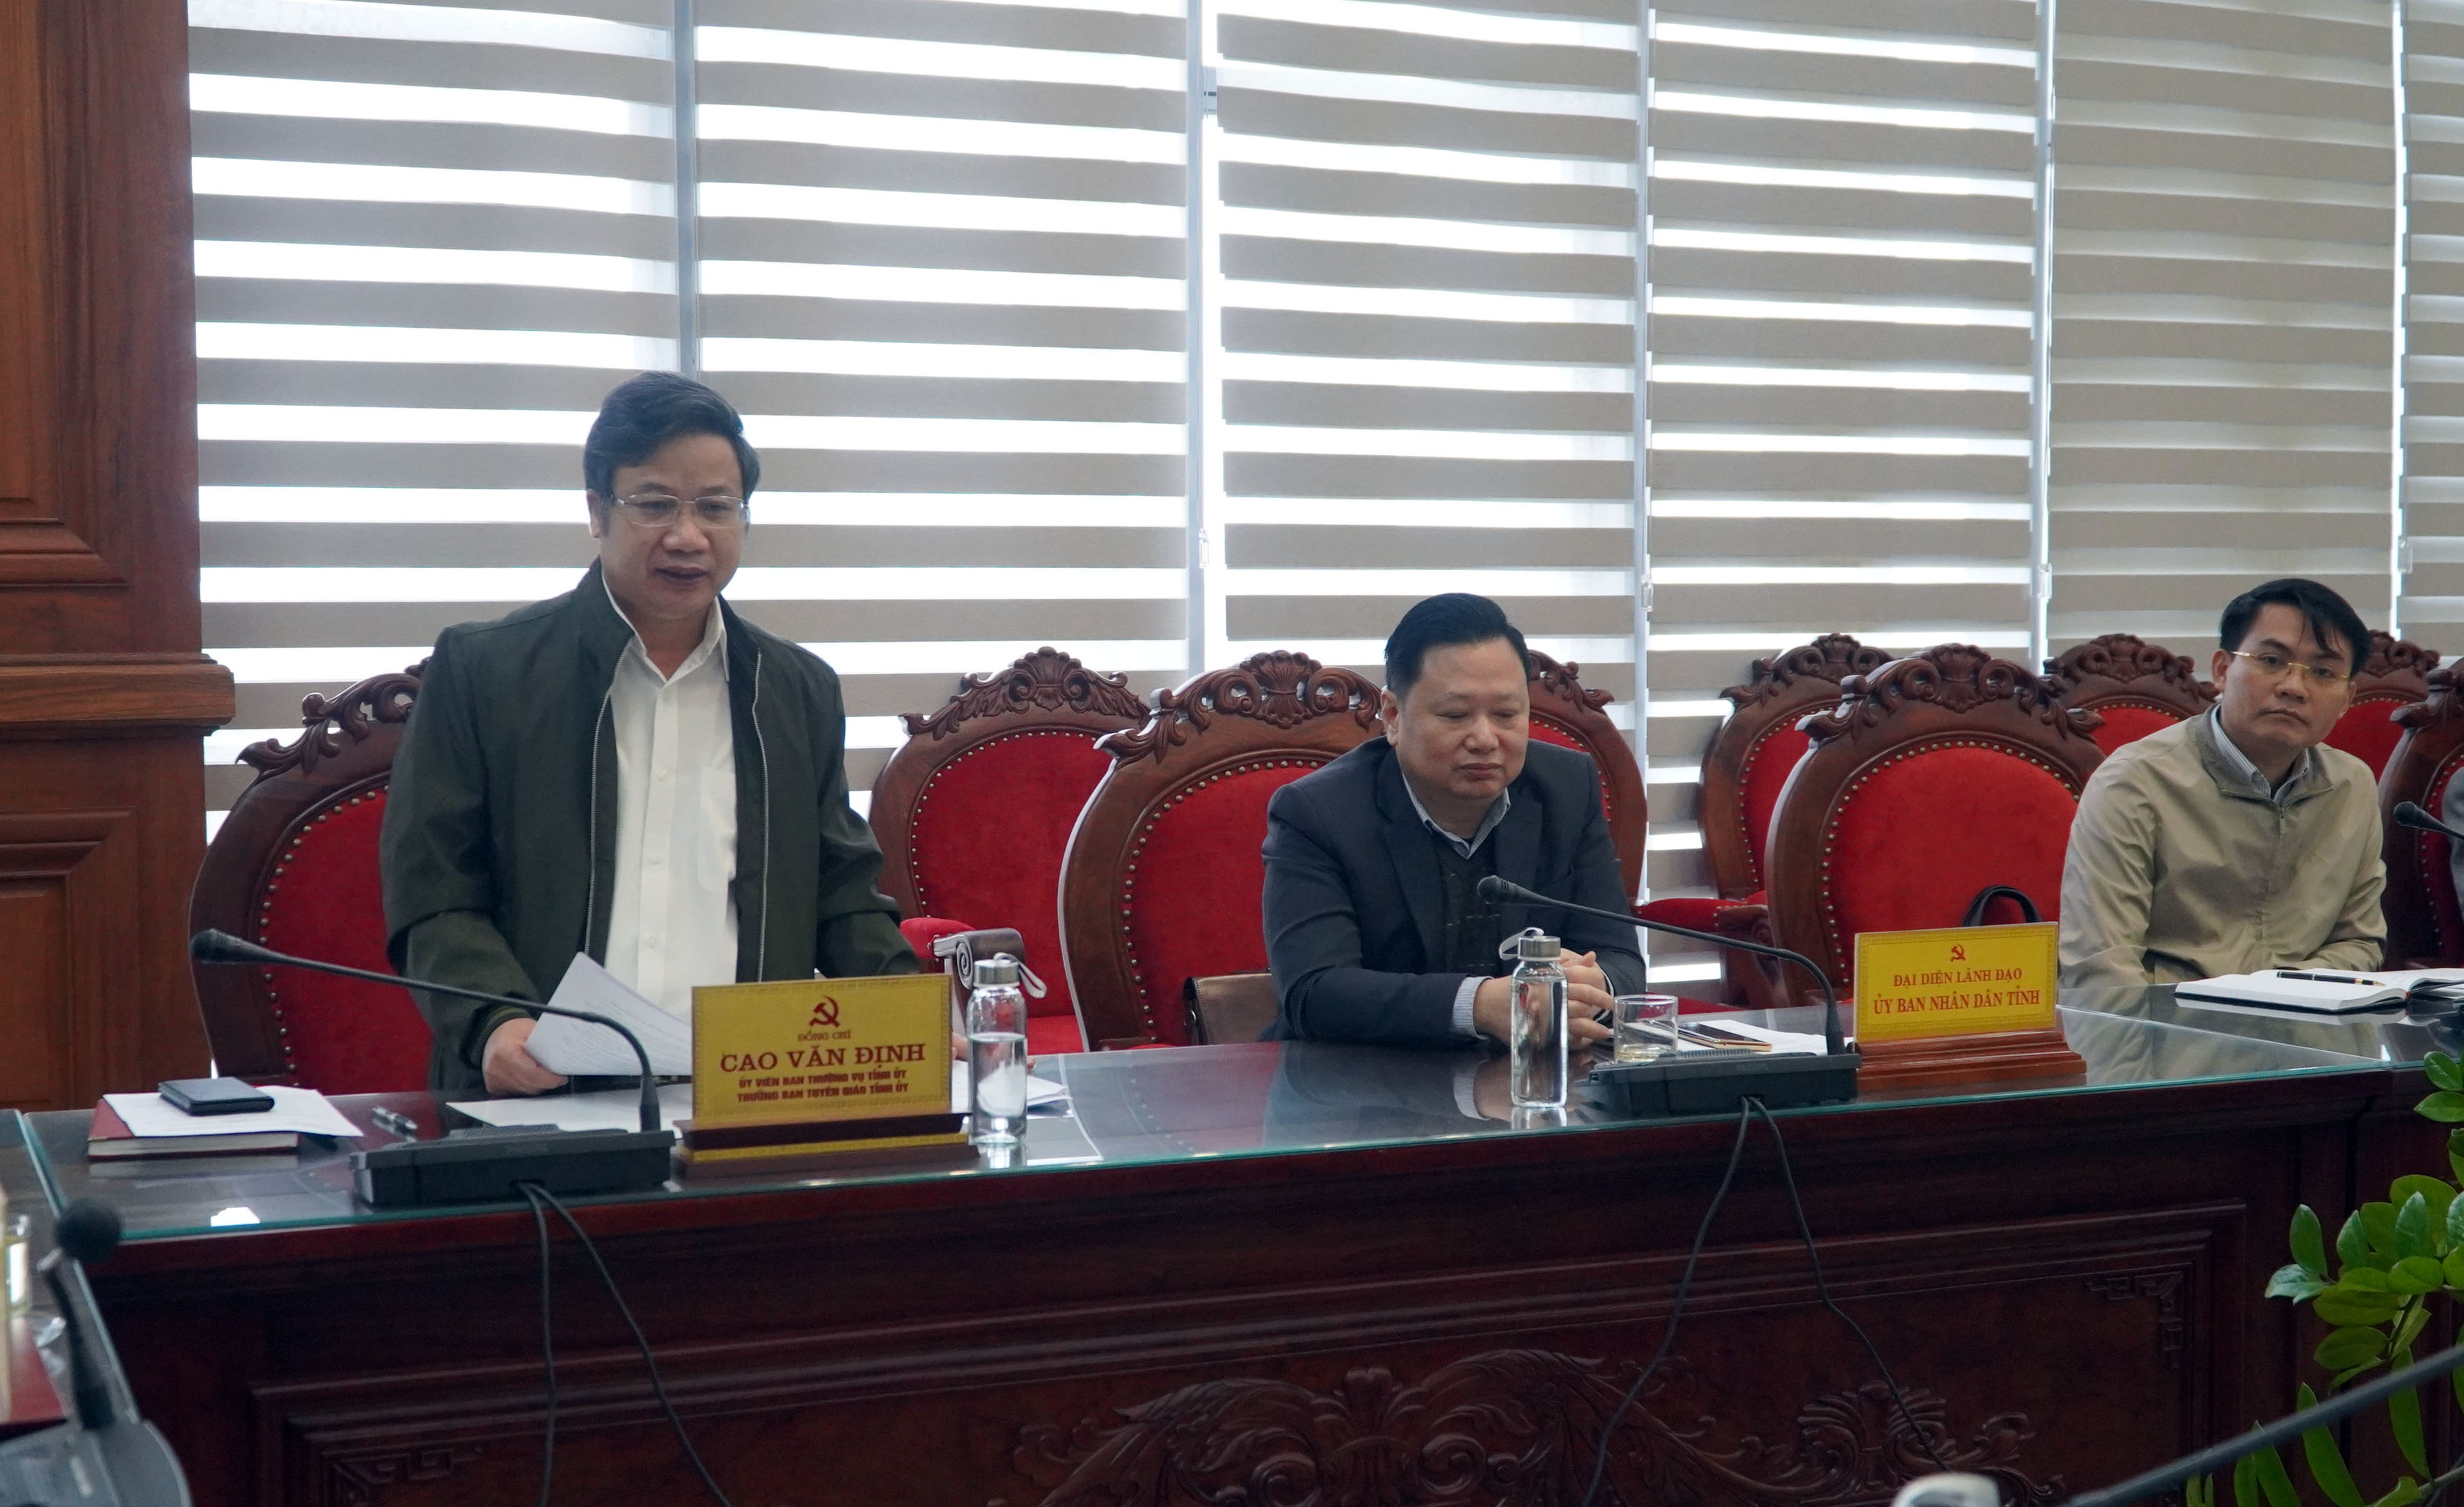 Đồng chí Cao Văn Định, Ủy viên Ban Thường vụ, Trưởng Ban Tuyên giáo Tỉnh ủy phát biểu tại buổi làm việc    